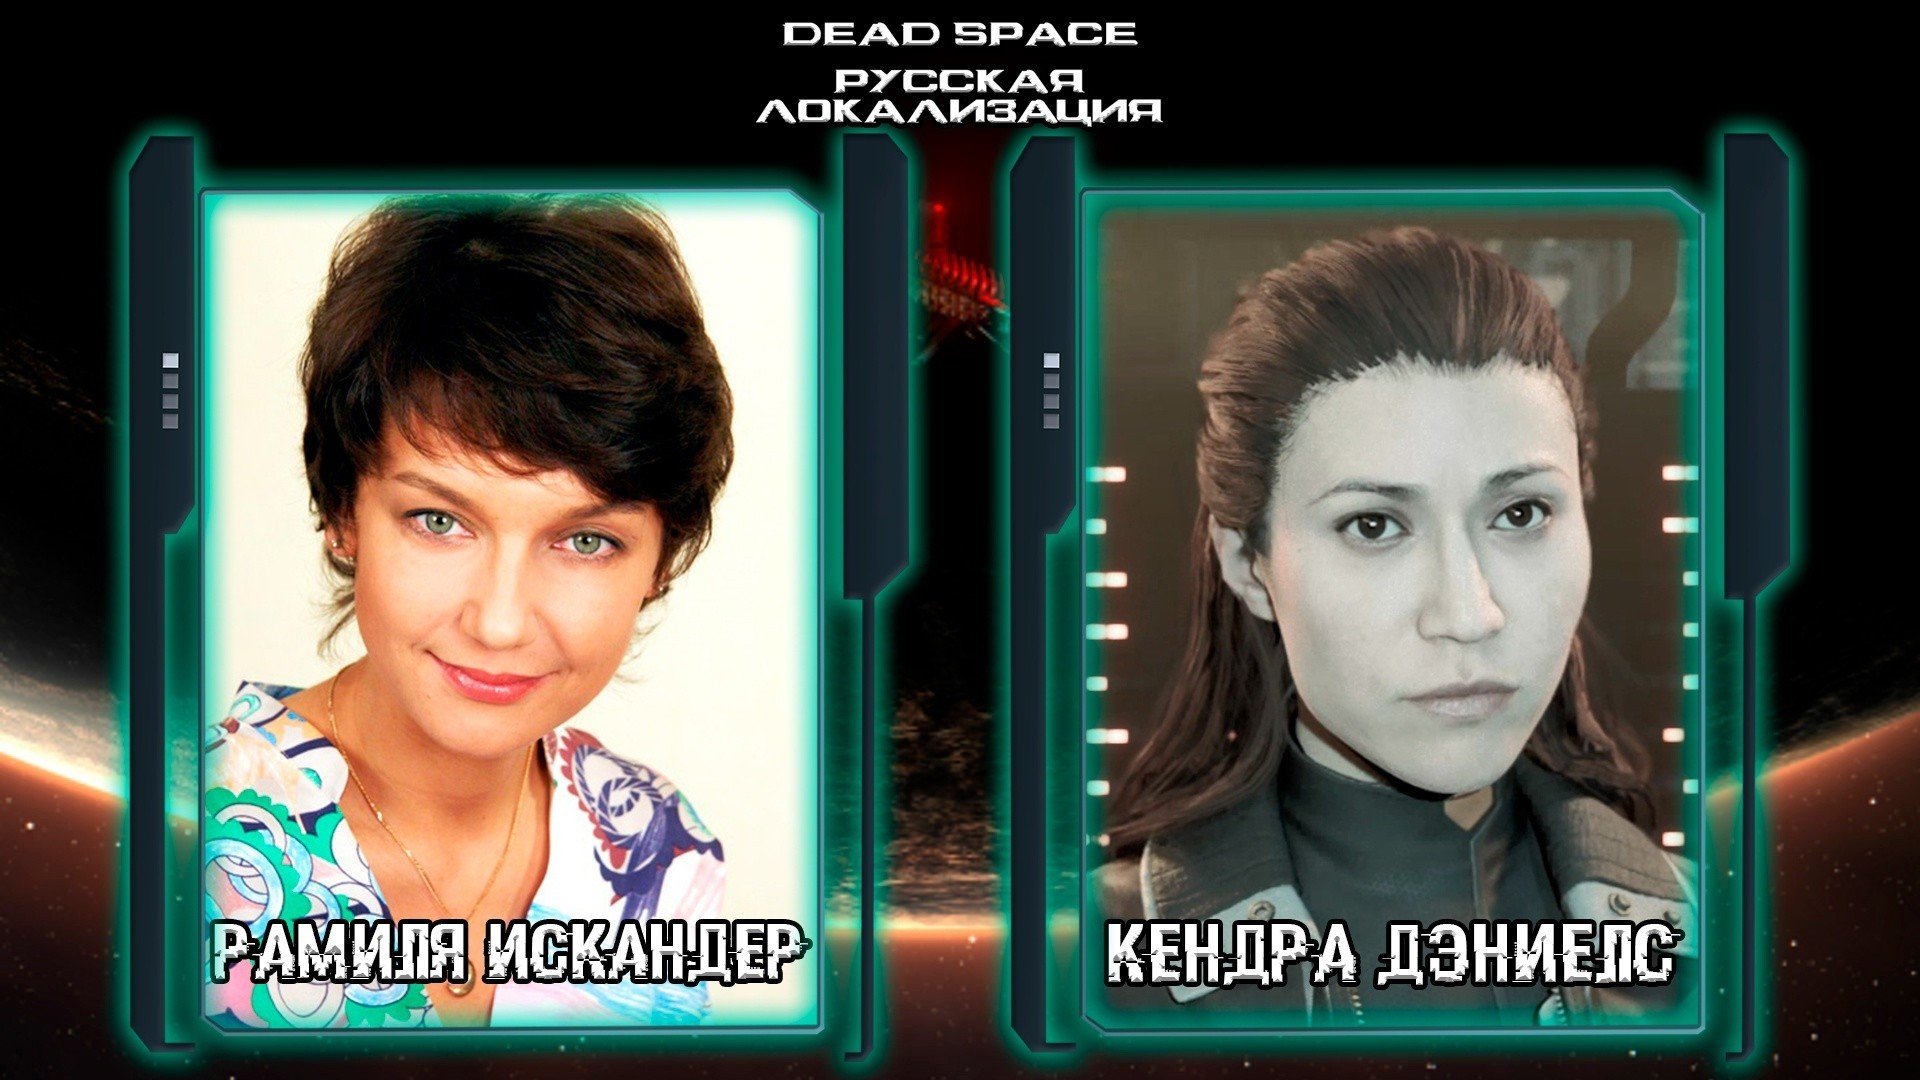 Русской озвучкой ремейка Dead Space займутся Пётр Гланц и другие звезды дубляжа